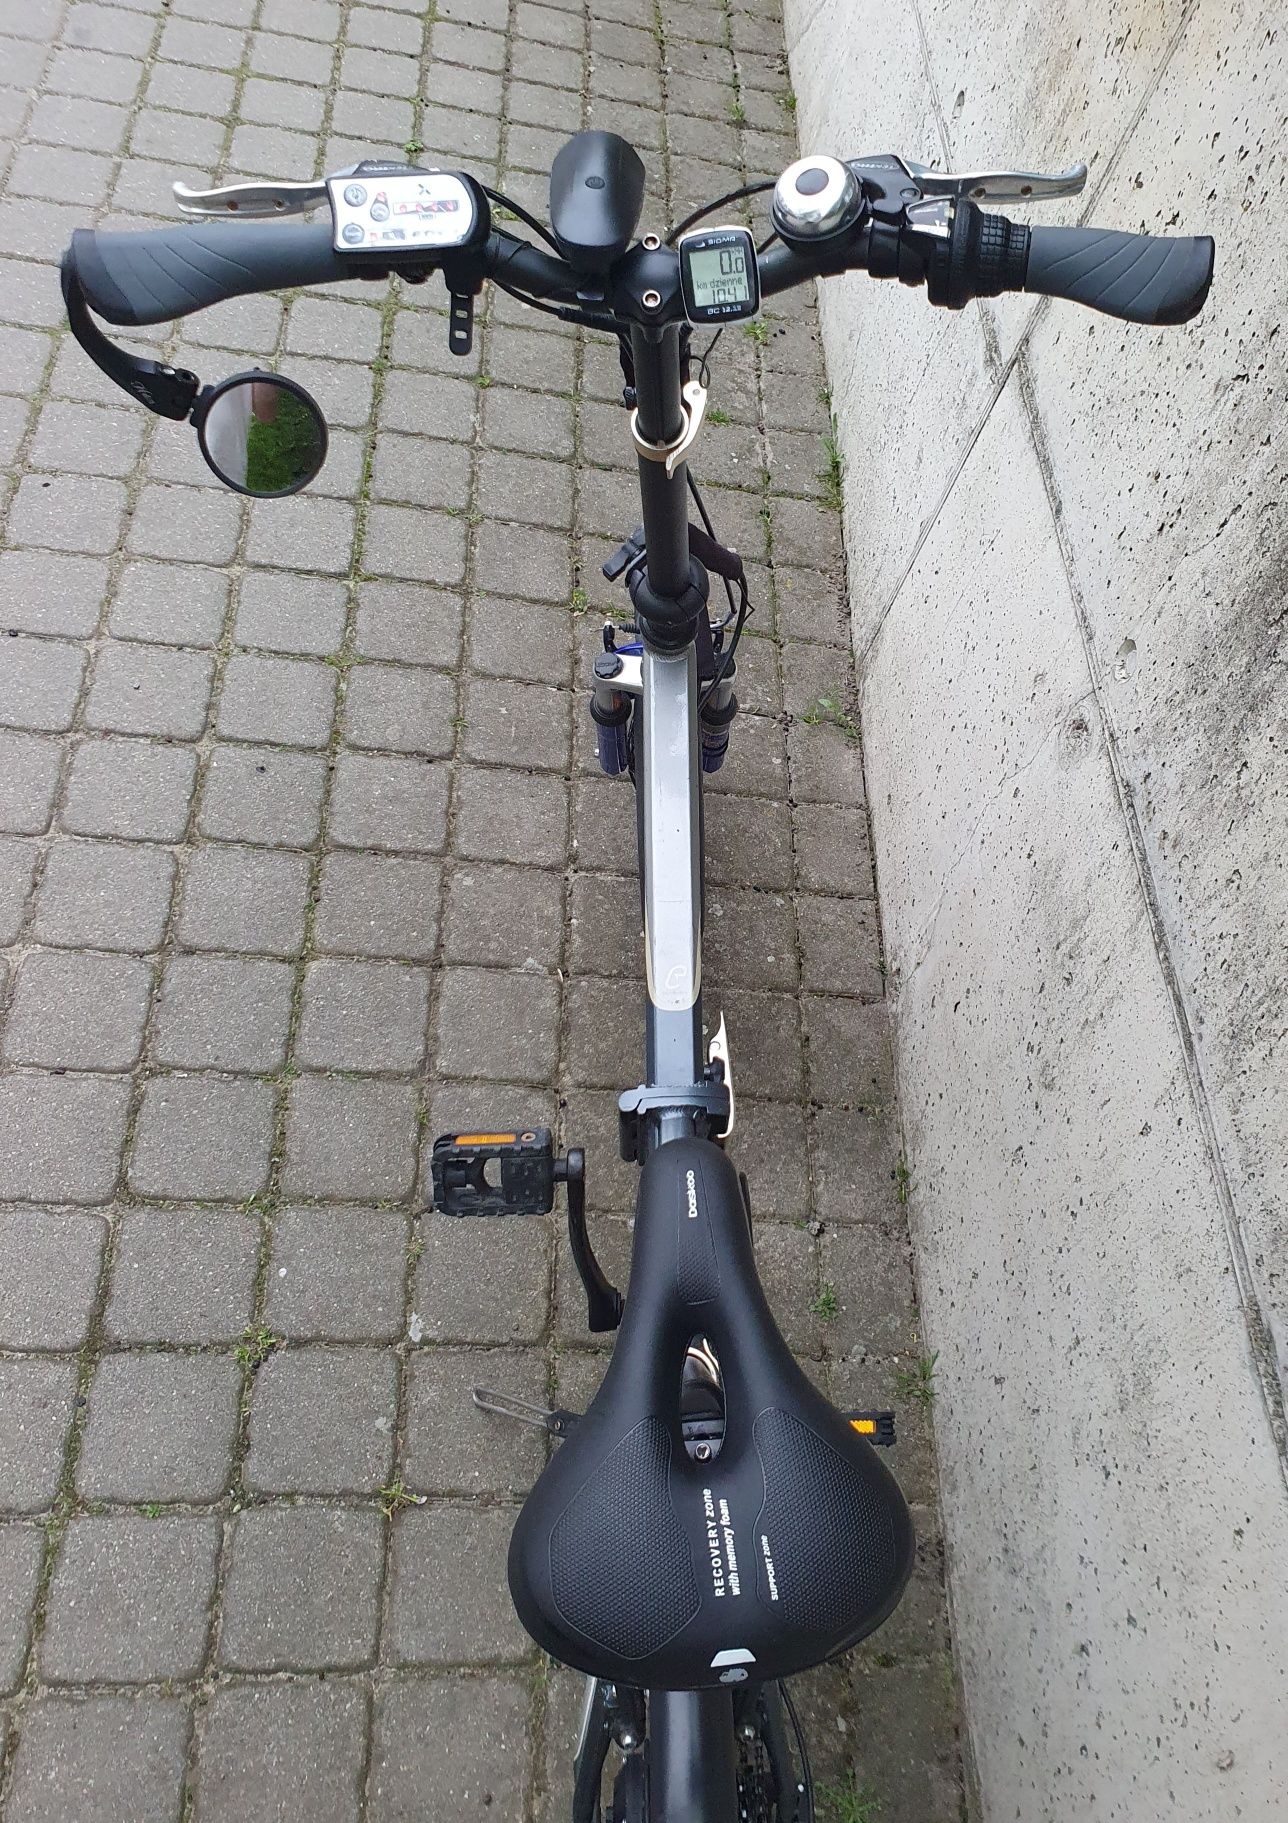 Miejski rower z silnikiem elektrycznym na dojazdy do pracy